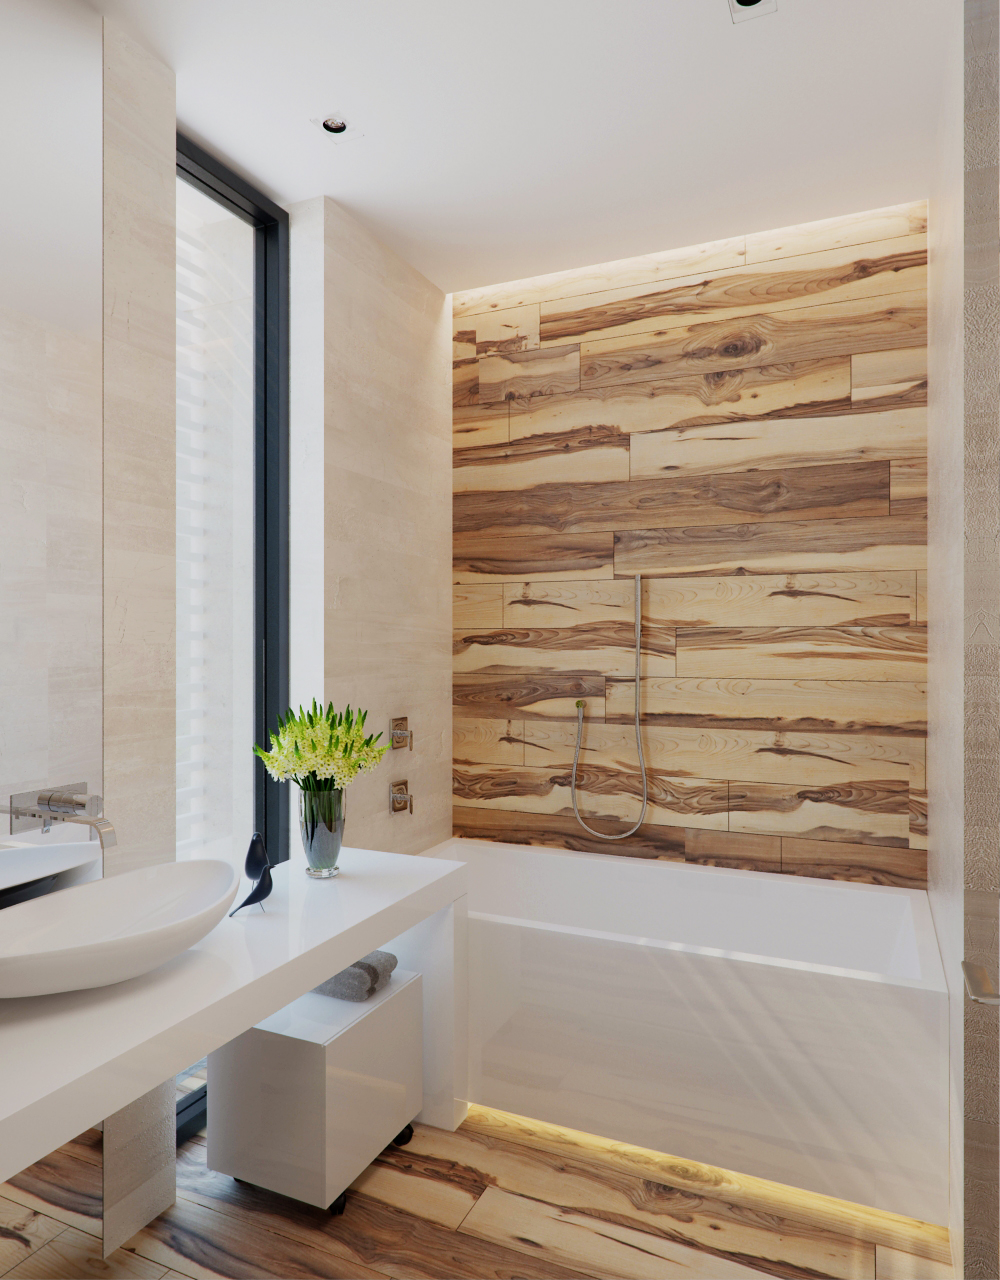 Wedo thiết kế nội thất phòng tắm đẹp, sang trọng với gỗ và đá